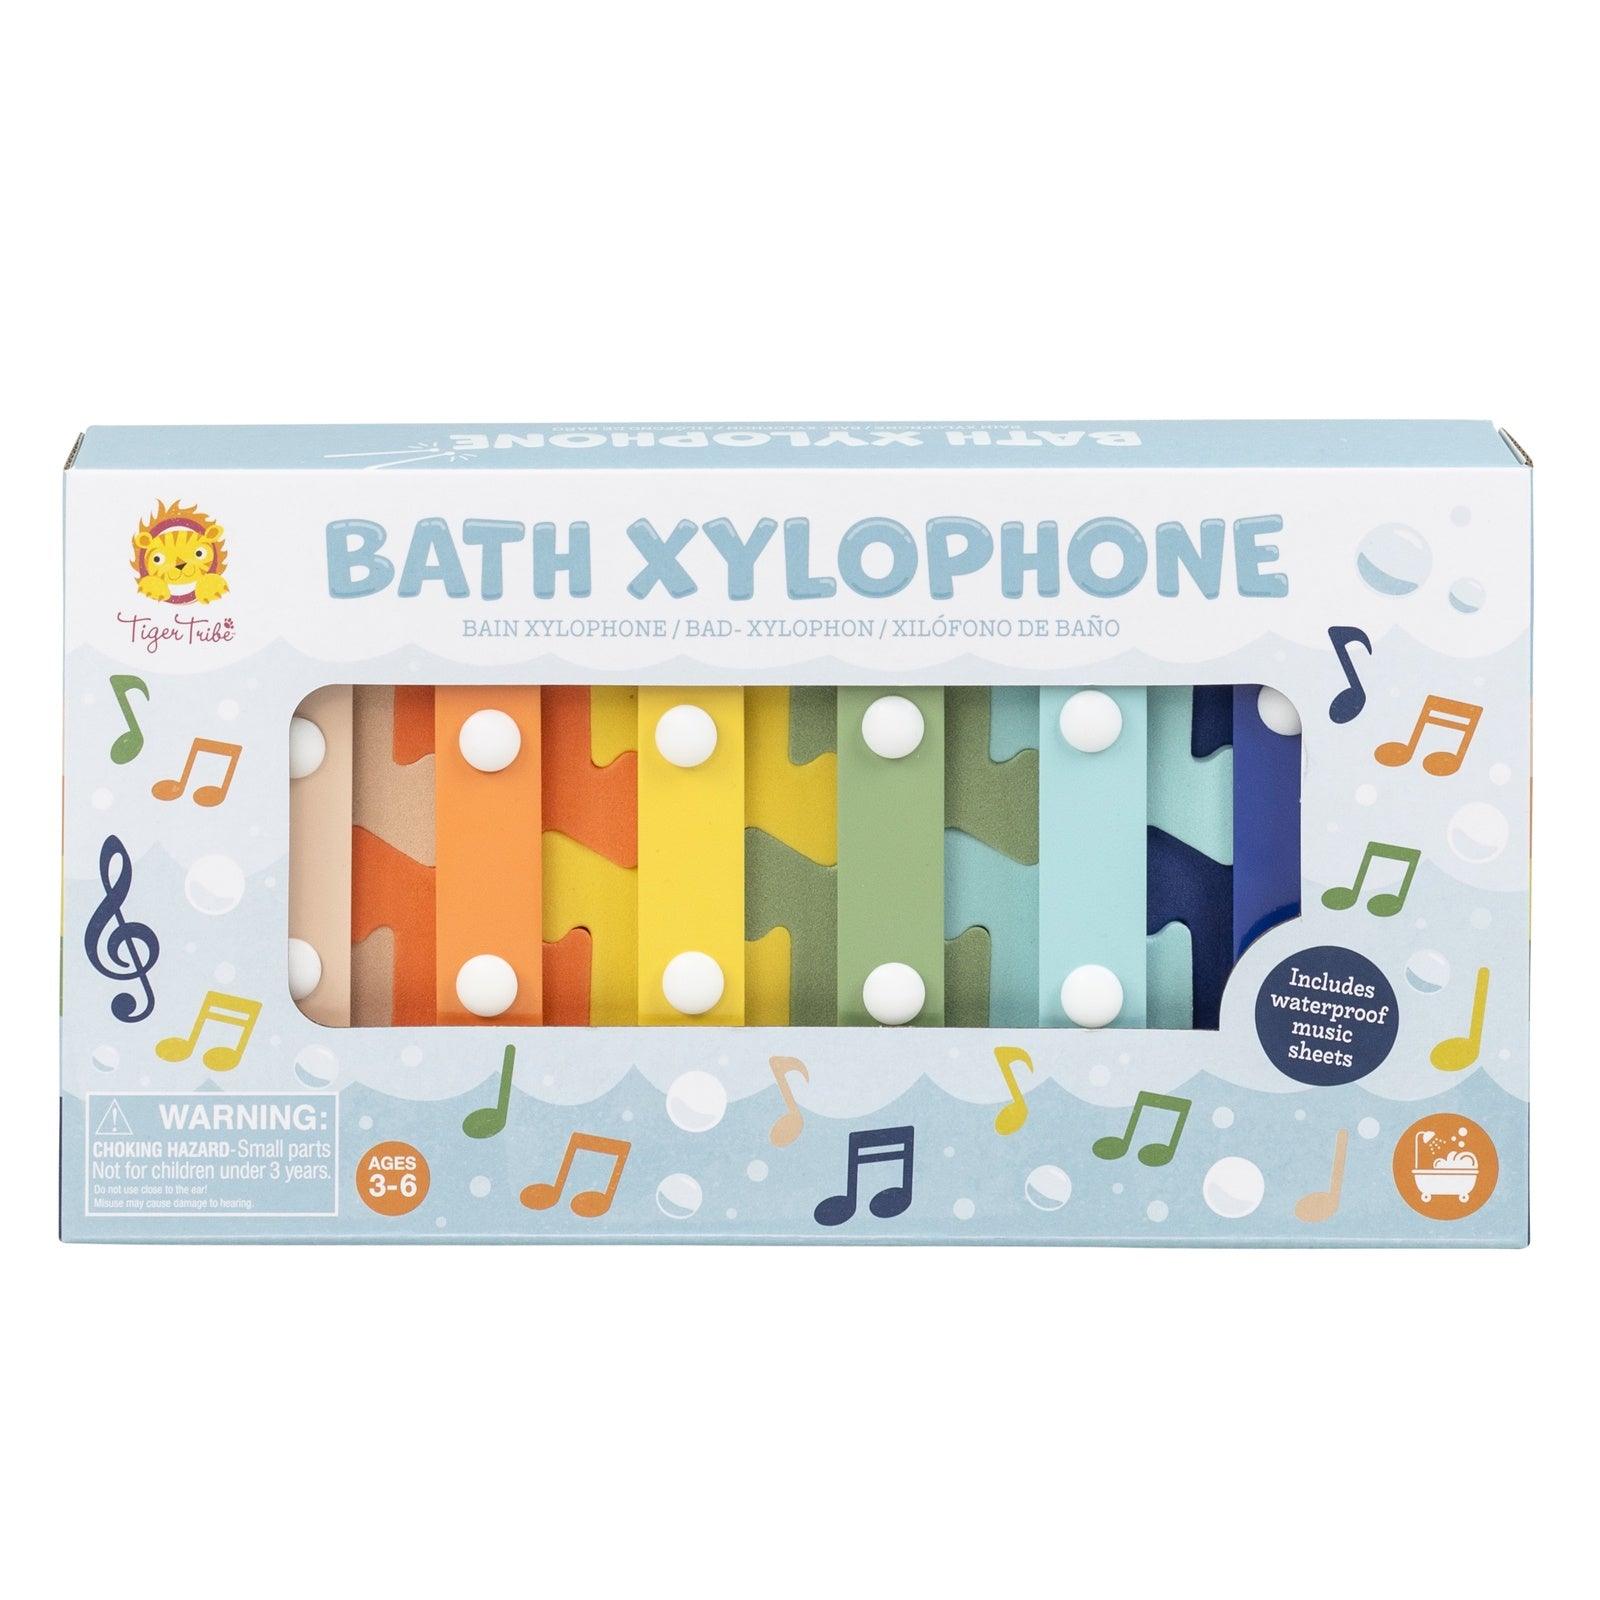 Bath Xylophone - Handworks Nouveau Paperie